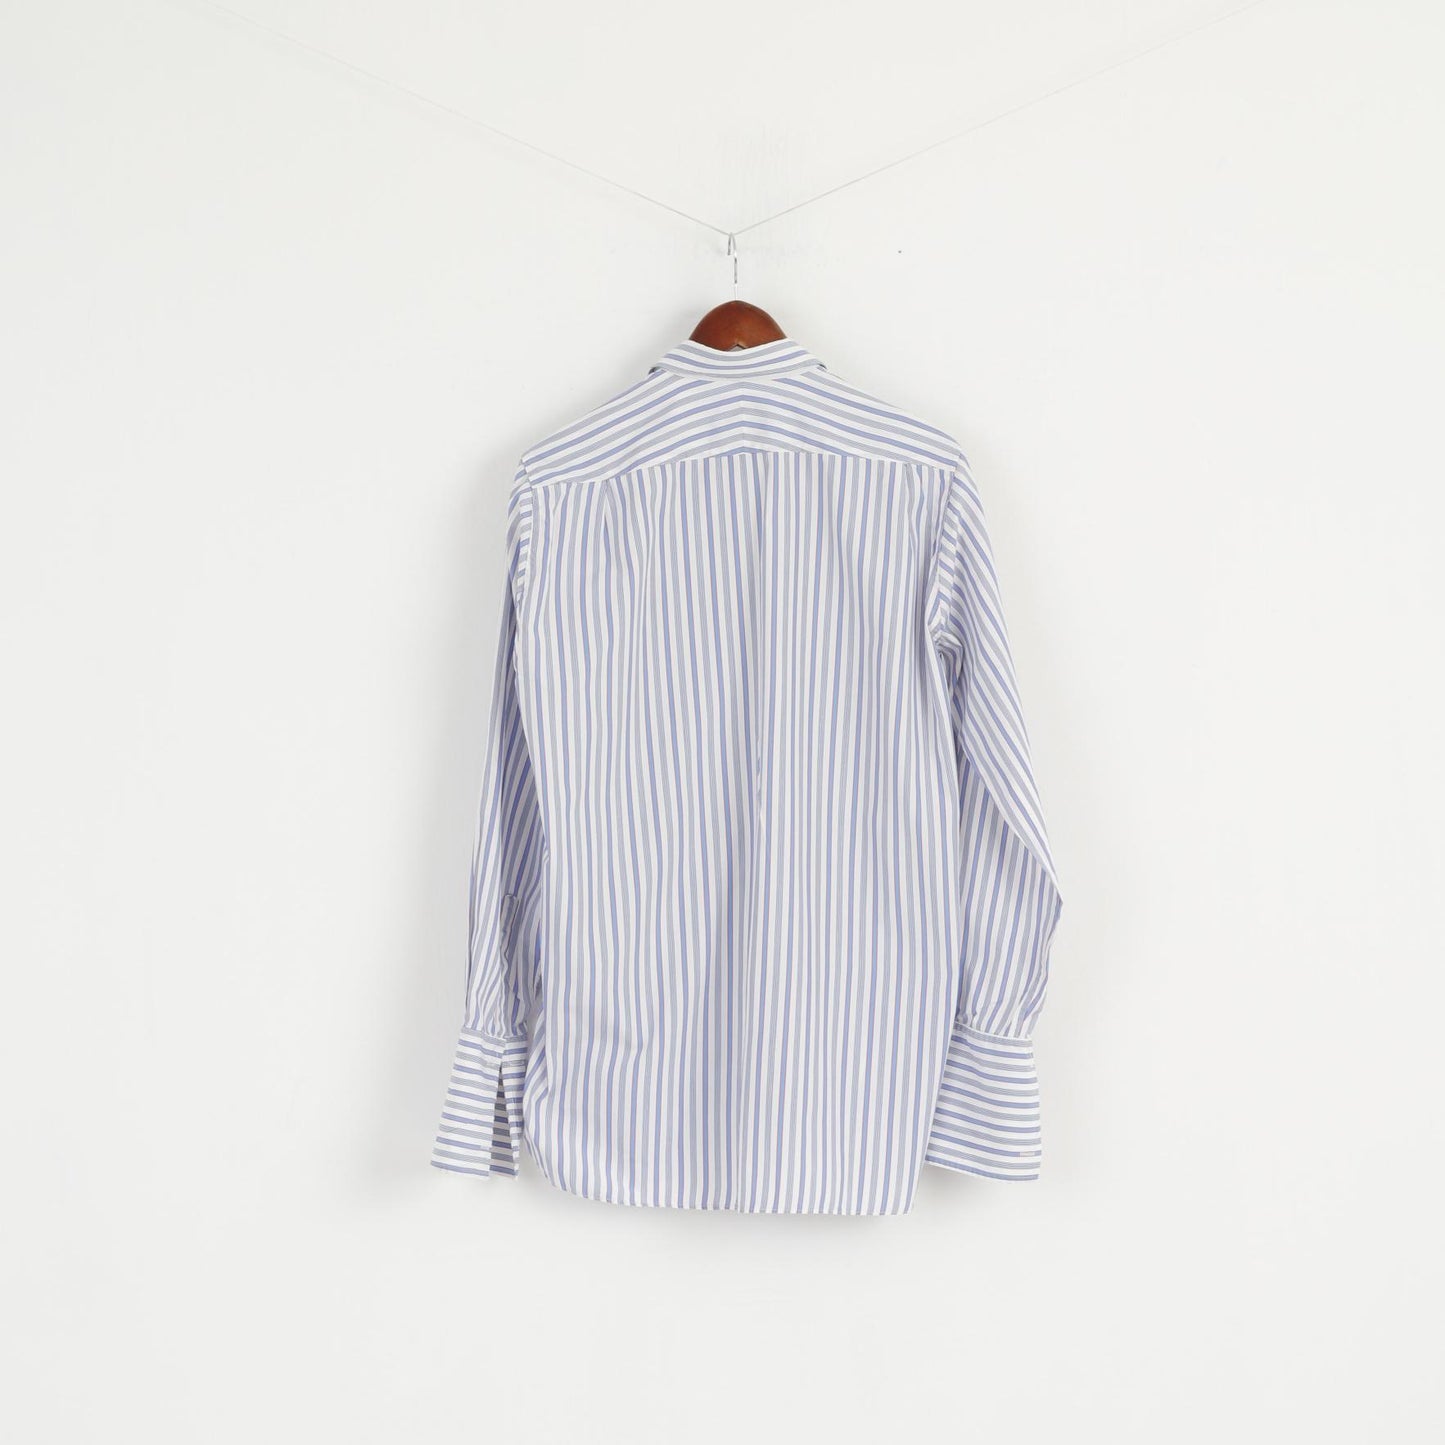 Cunningham Shirtmakers Uomo 15.5 39 M Camicia casual Top in cotone a righe bianco blu